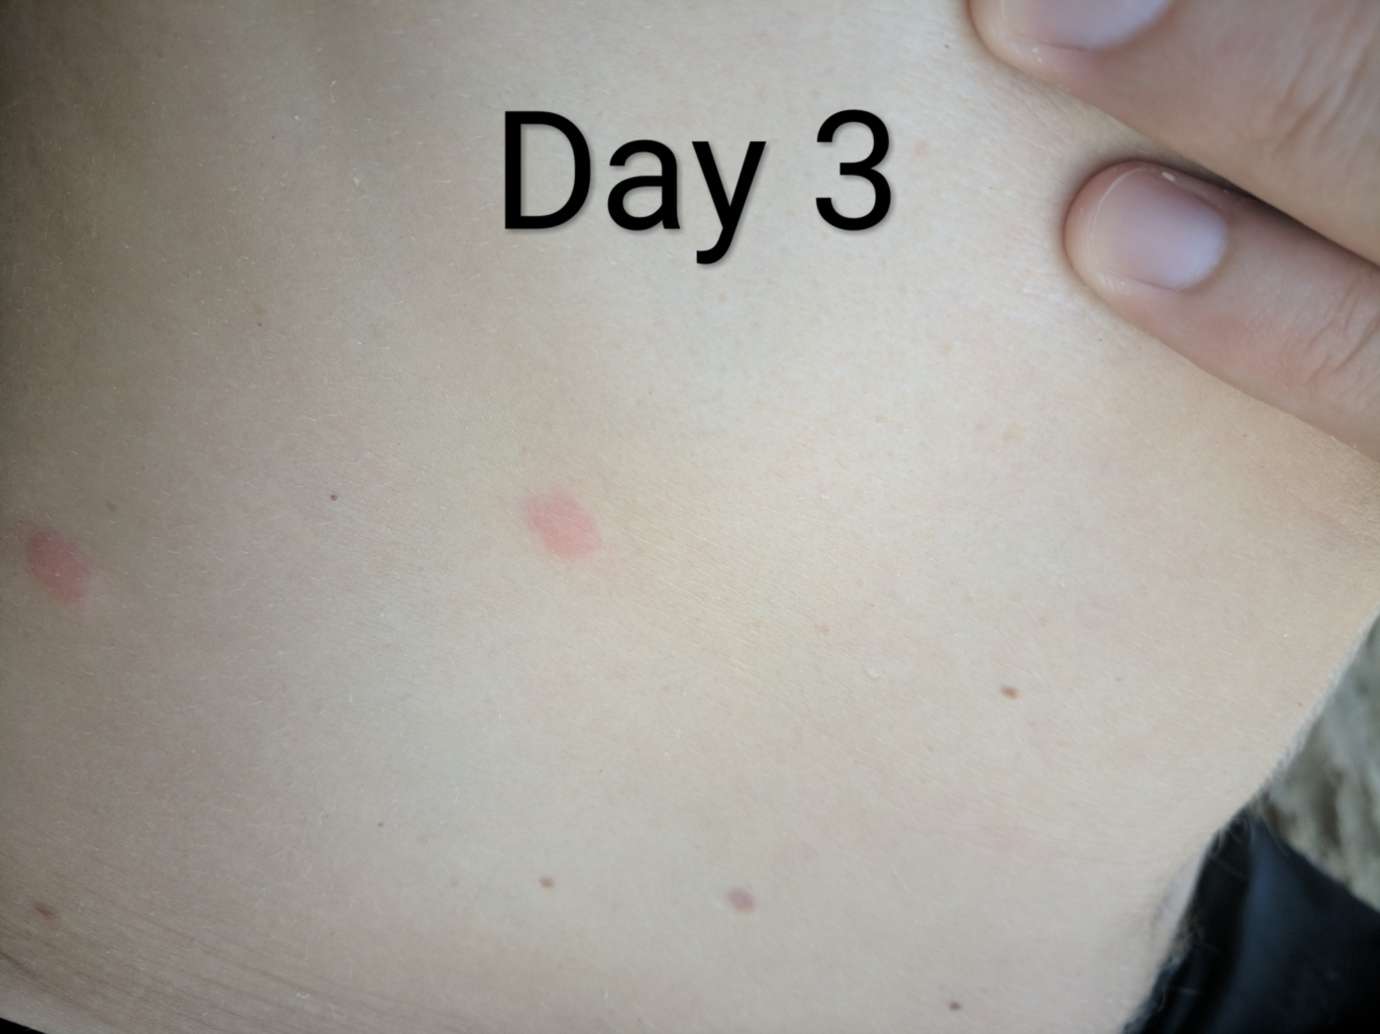 Bullseye rash: lyme disease or just a look